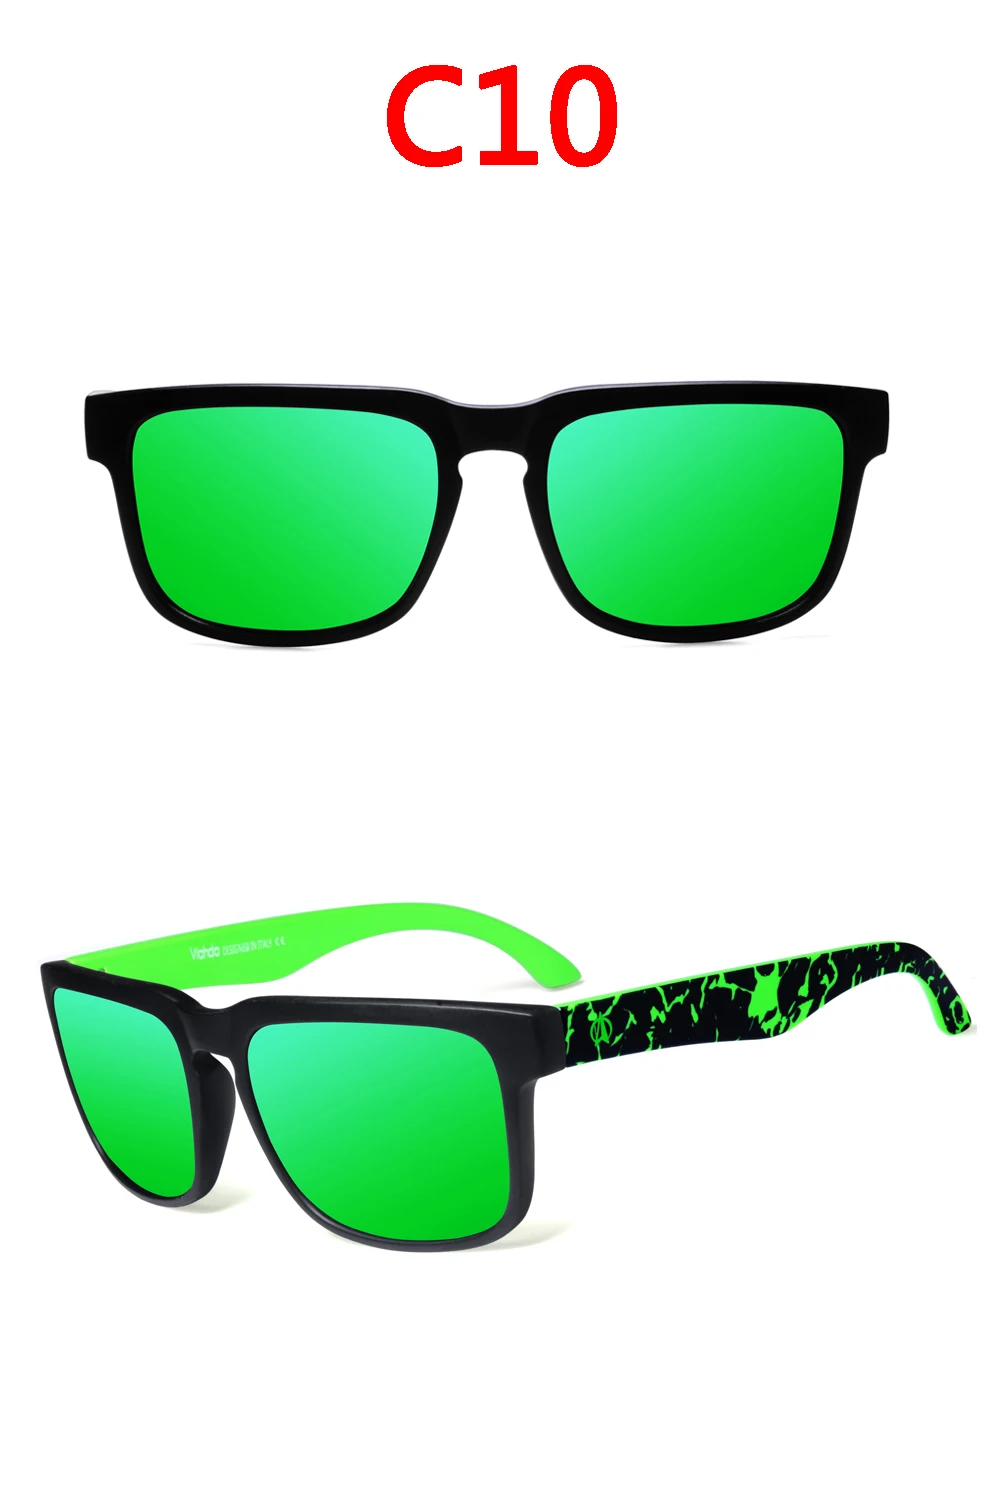 VIAHDA, поляризационные солнцезащитные очки, мужские, крутые, Ретро стиль, фирменный дизайн, мужские солнцезащитные очки, Полароид, линзы, очки, оттенки, Oculos Masculino